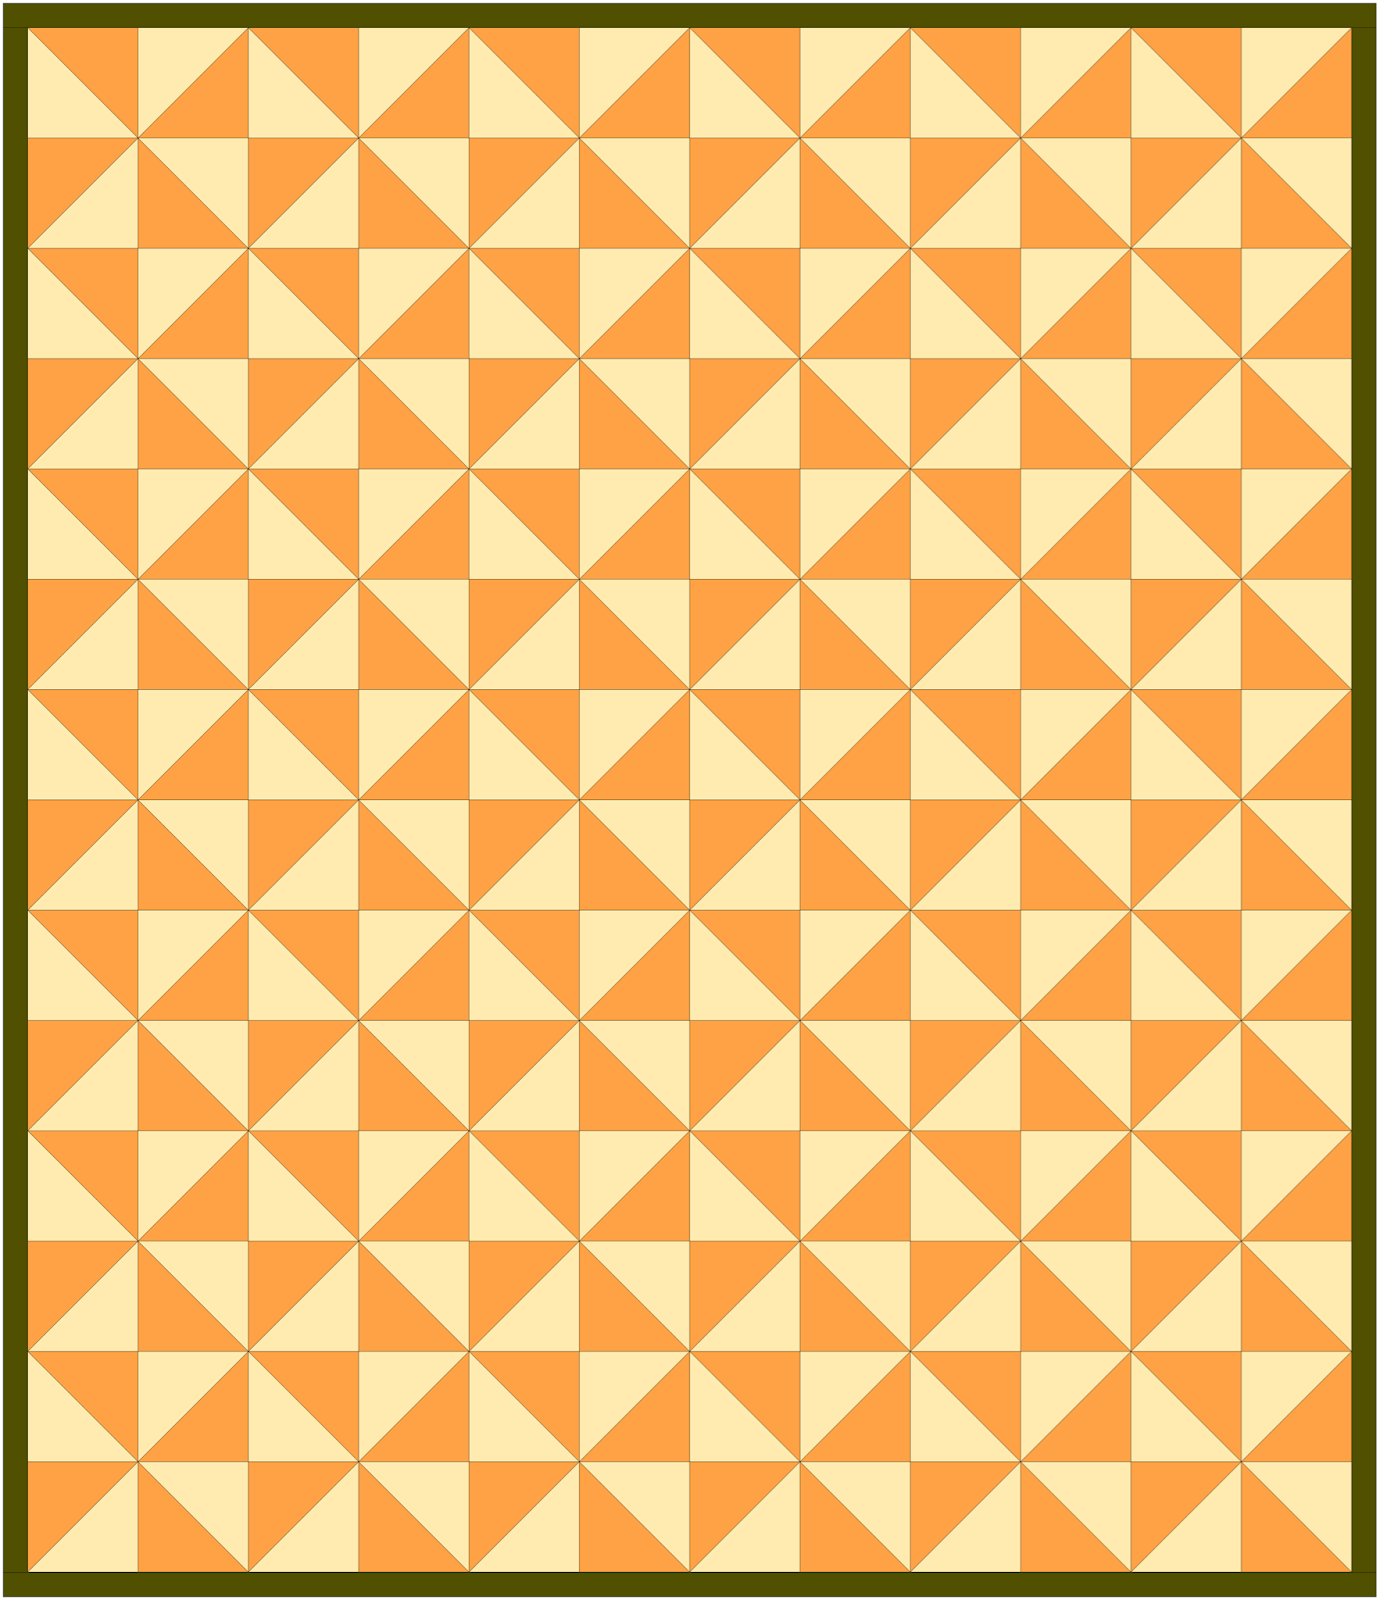 pinwheel quilt pattern